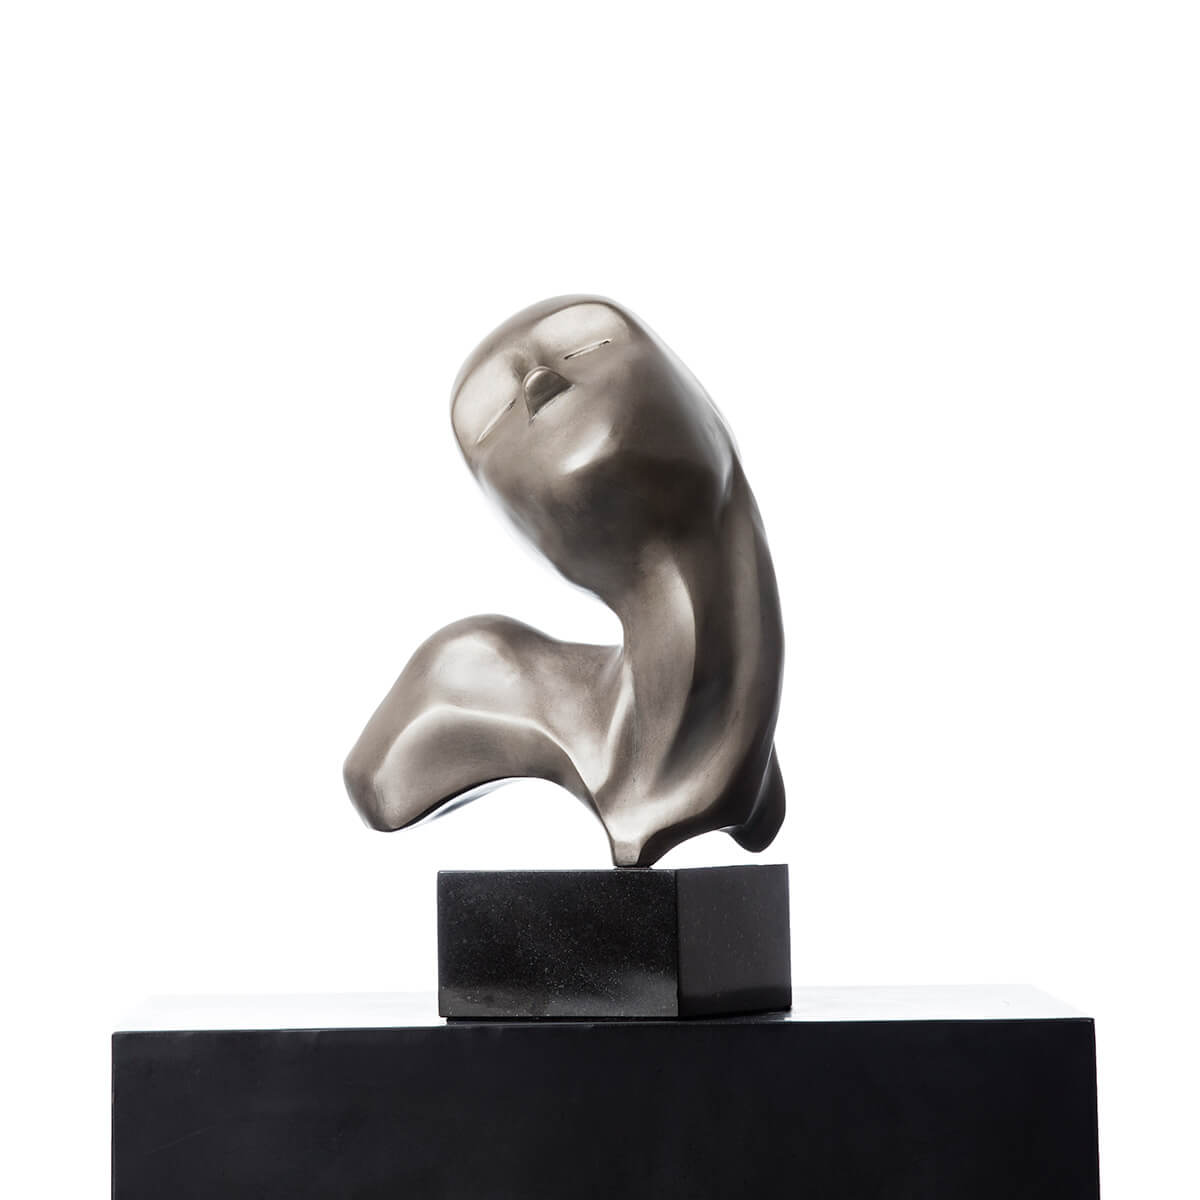 Robert-Helle-Sculpture-Gallery-Contentment-3-1200x1200